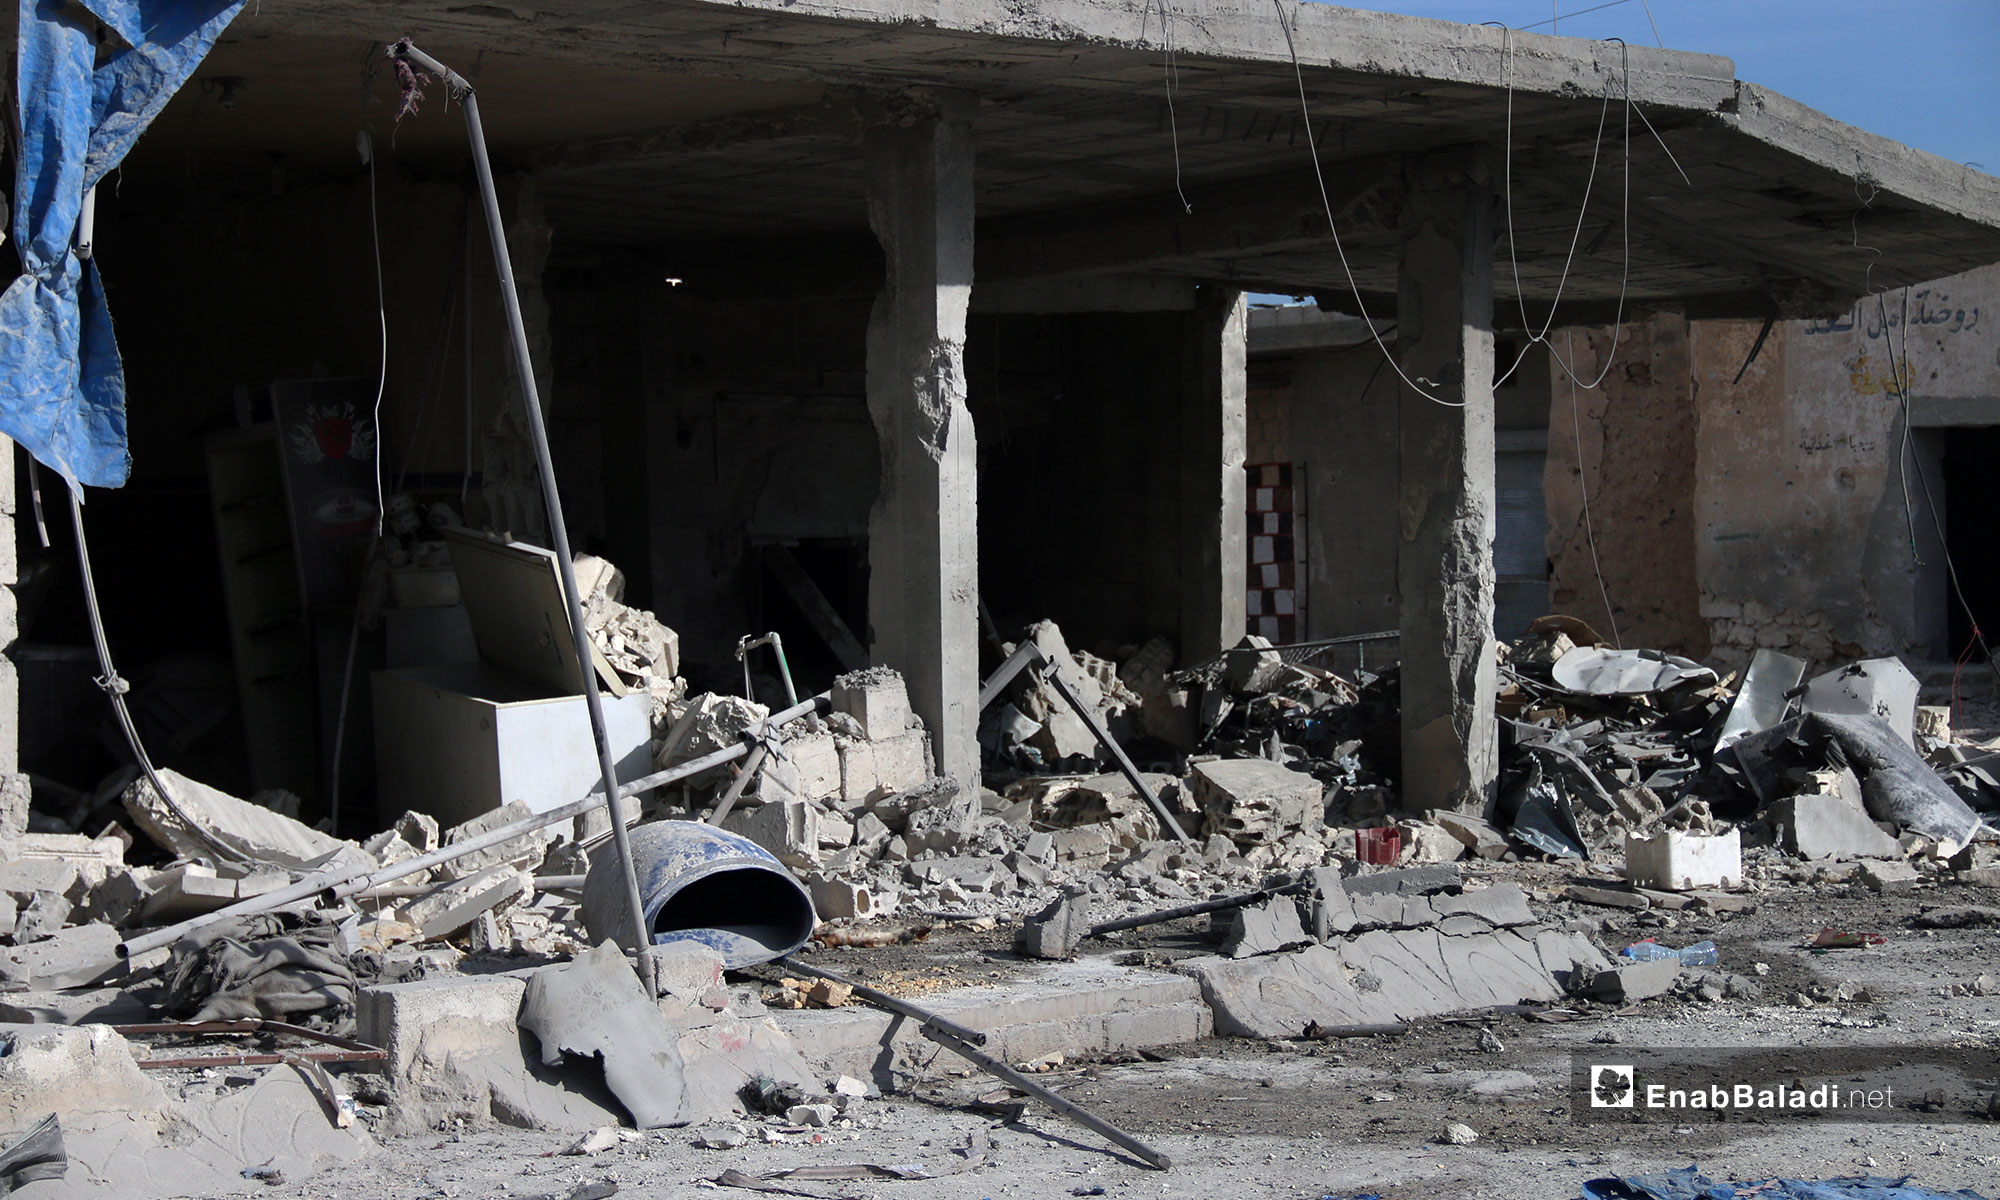 آثار الدمار الذي خلفه القصف في بلدة التح بريف إدلب - 4 من شباط 2019 (عنب بلدي)